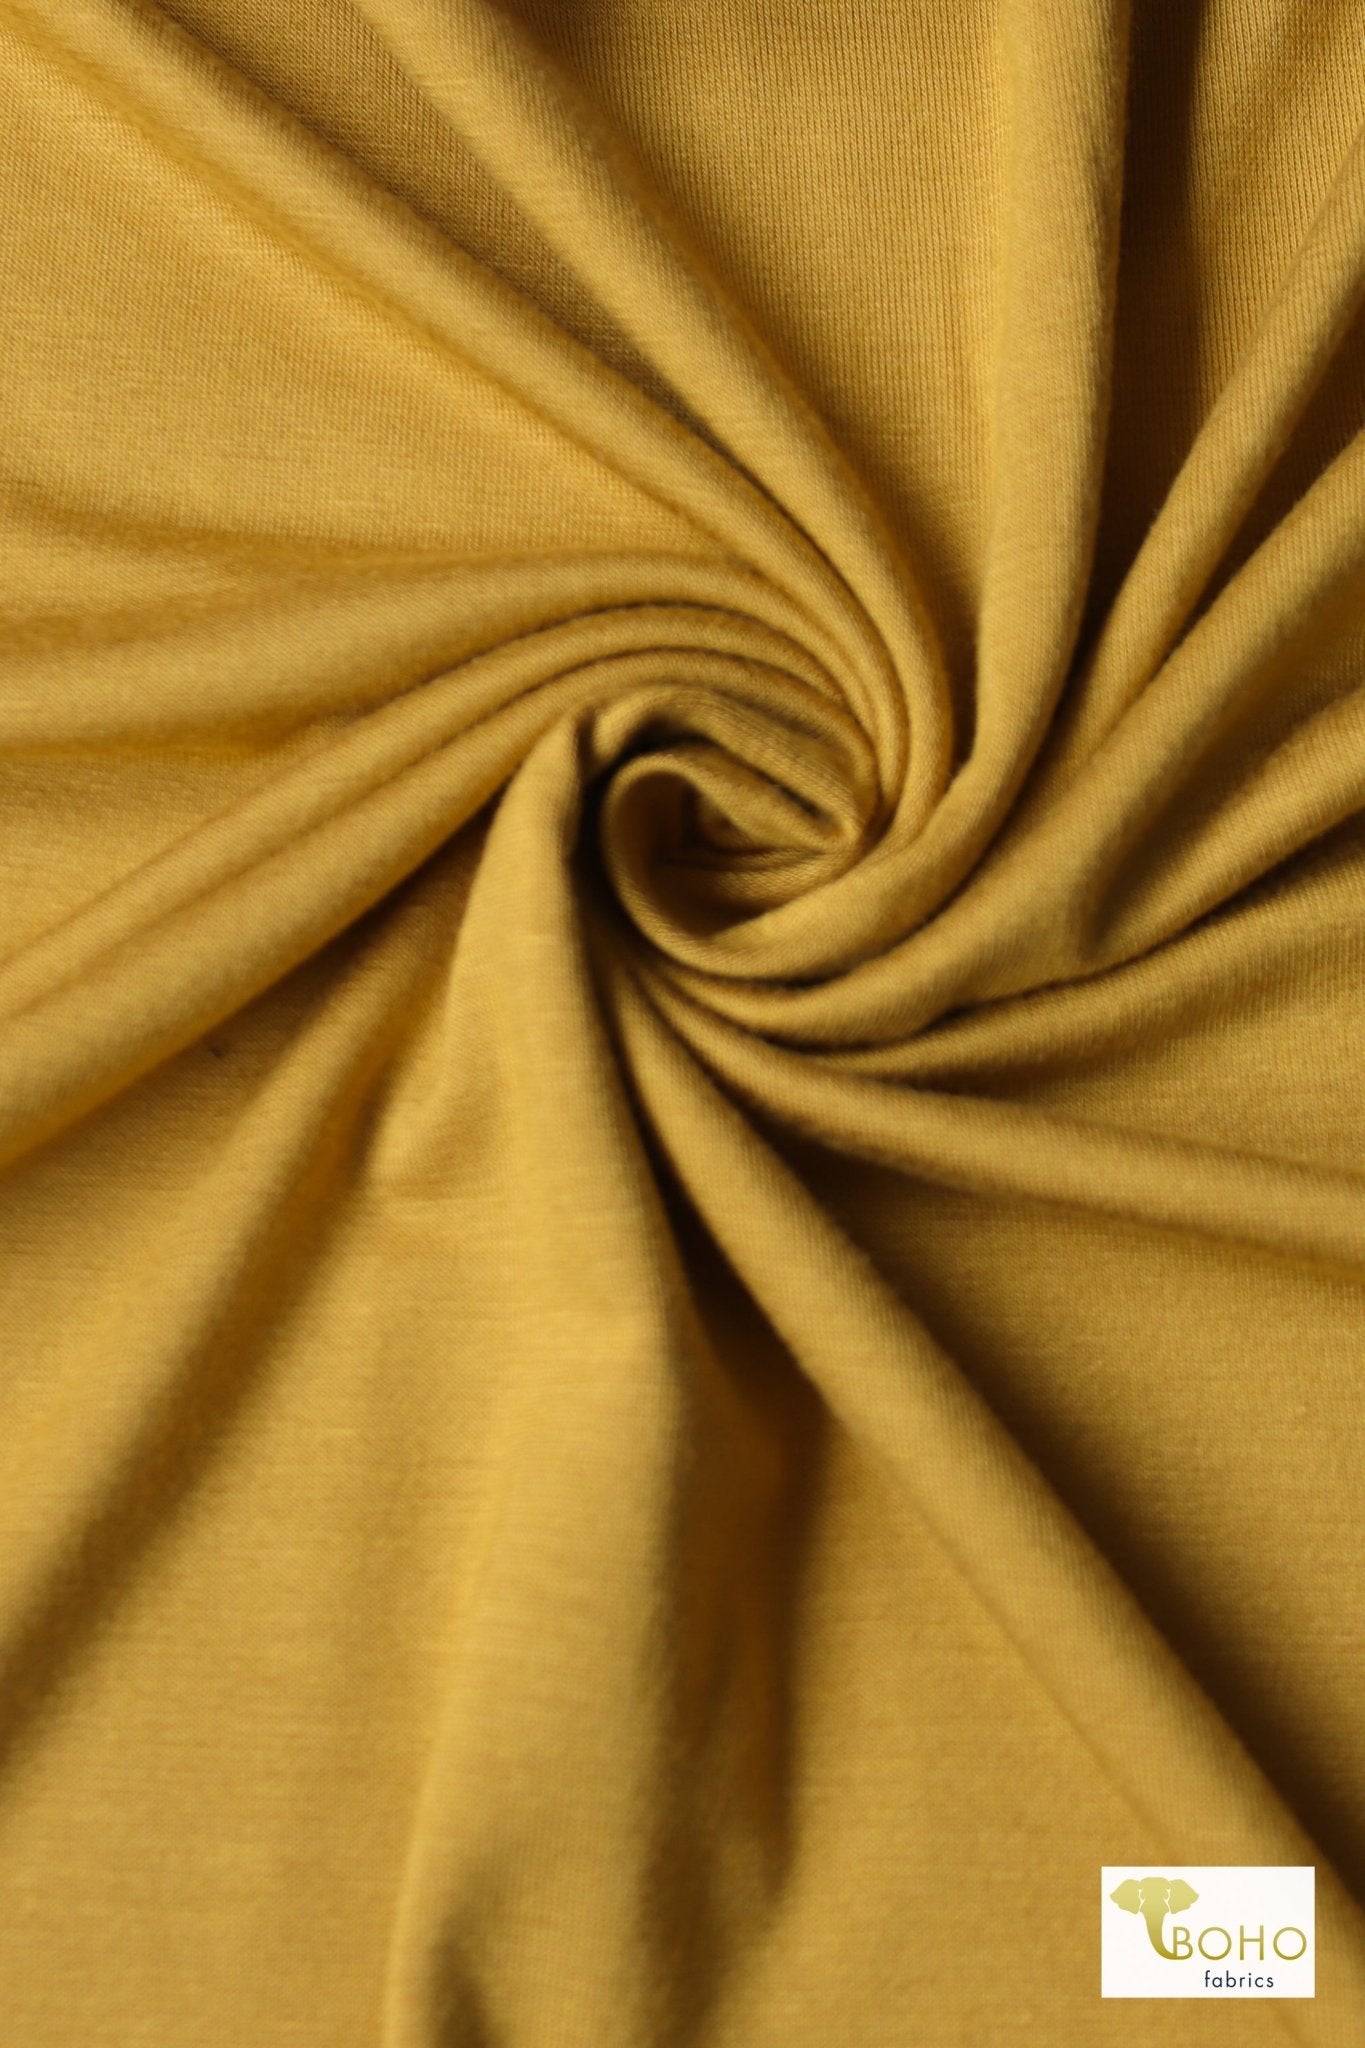 Golden Glow, Yellow. Rayon Spandex Knit - Boho Fabrics